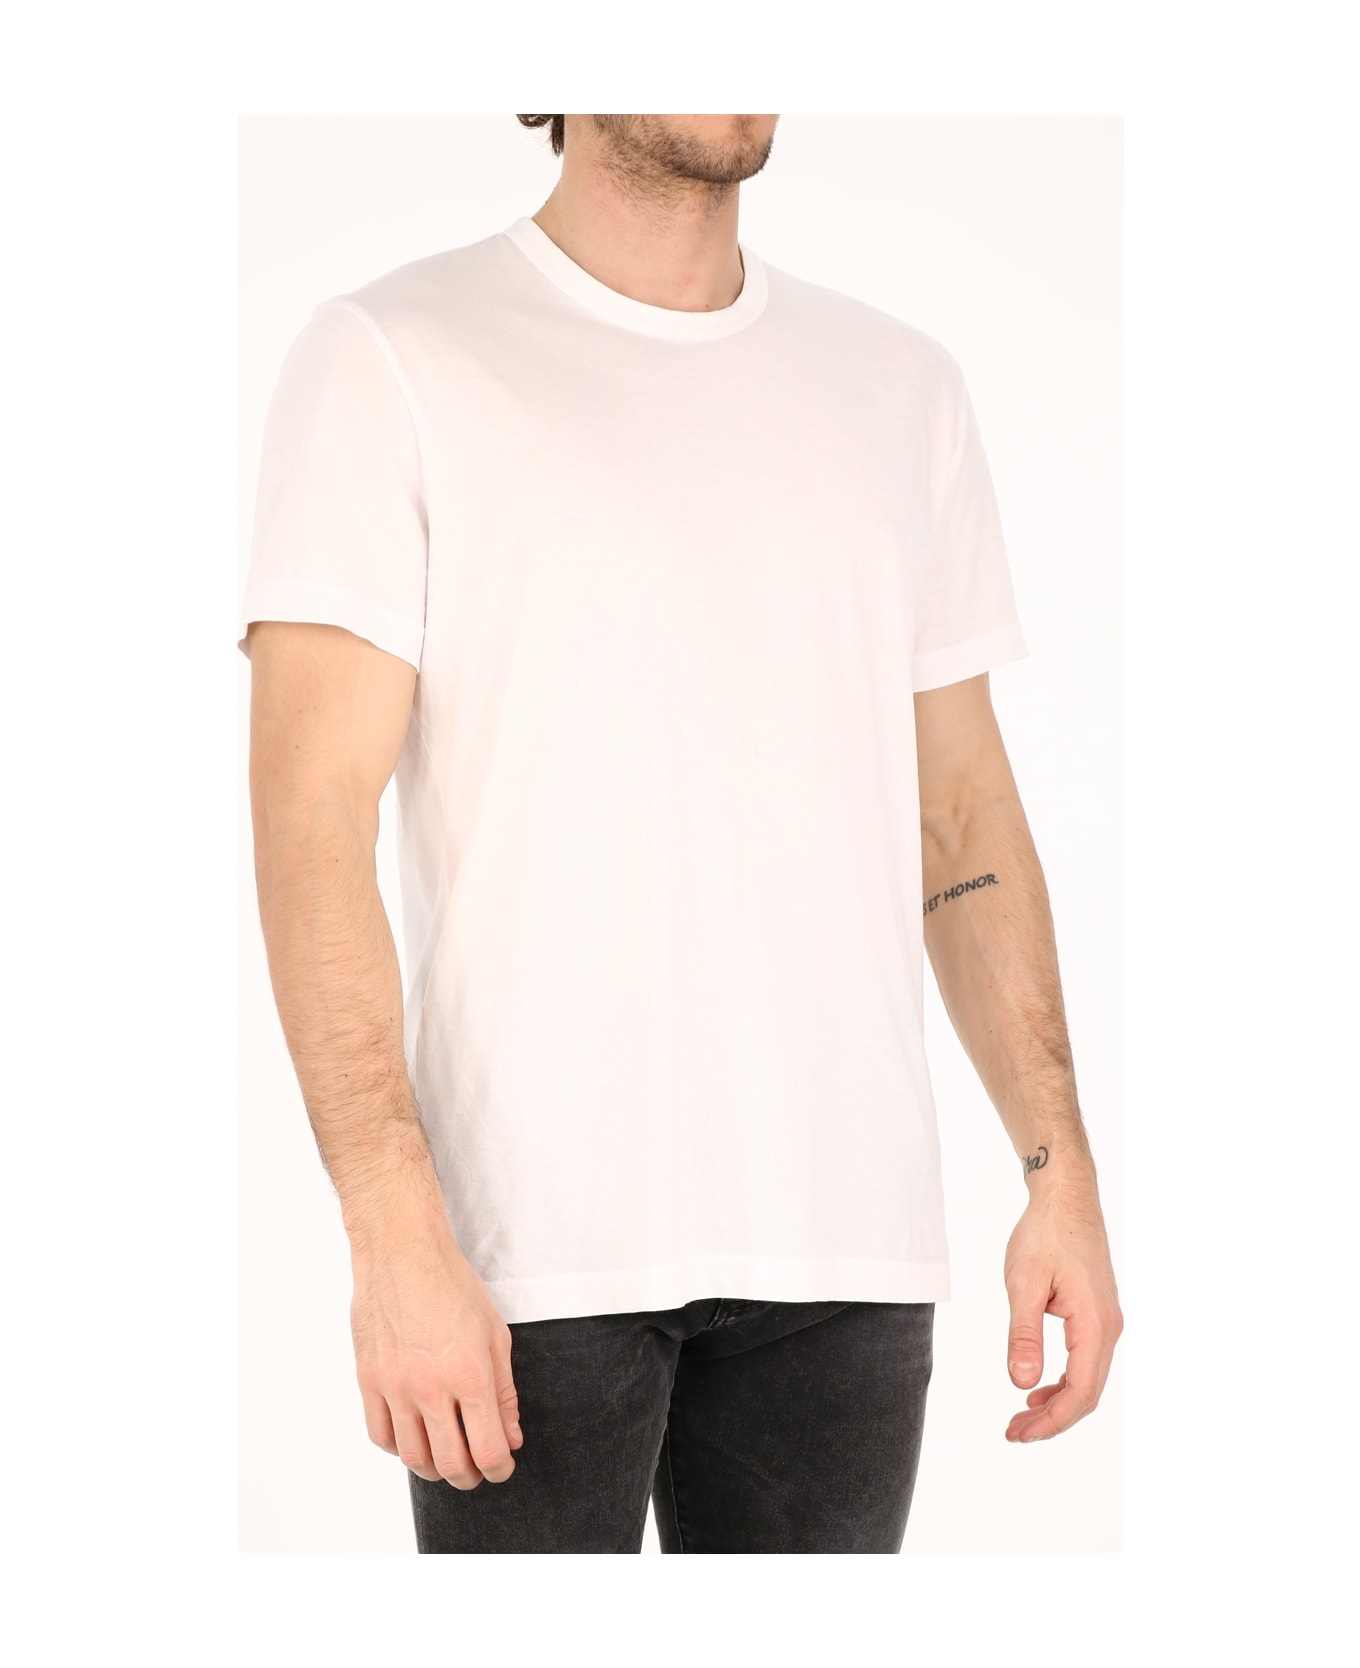 James Perse White Cotton T-shirt - WHITE